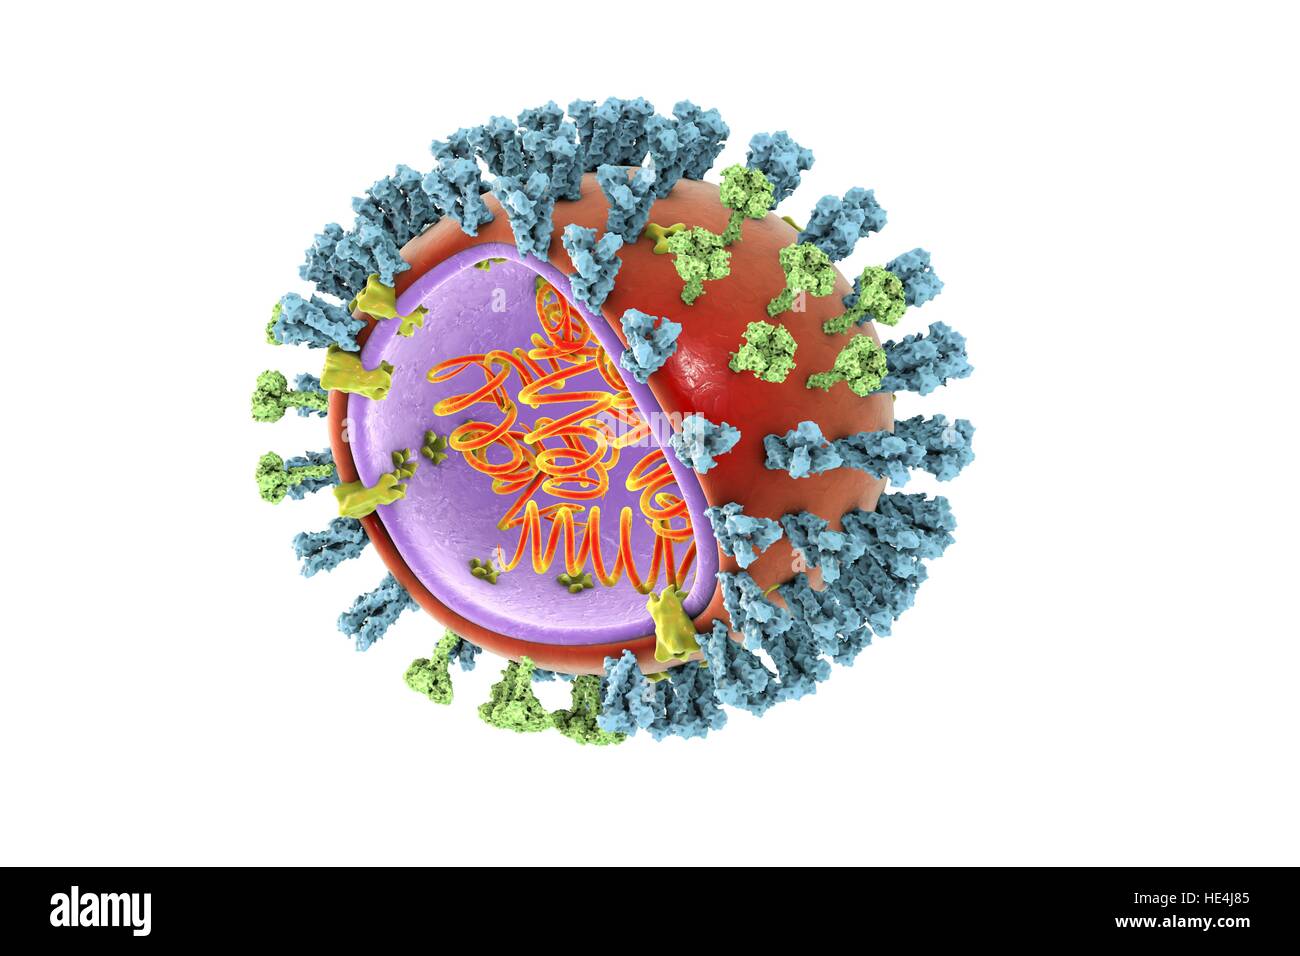 Influenza aviaria virus.3D illustrazione di influenza aviaria H5N8 di particelle di virus.Il virus è costituito da acido ribonucleico (RNA,arancio bobine) core,circondato da nucleocapside (viola) lipide busta (arancione).Spanning capside busta sono M2 proteine (giallo),che agiscono come pompe di protoni.In busta sono due tipi di Foto Stock